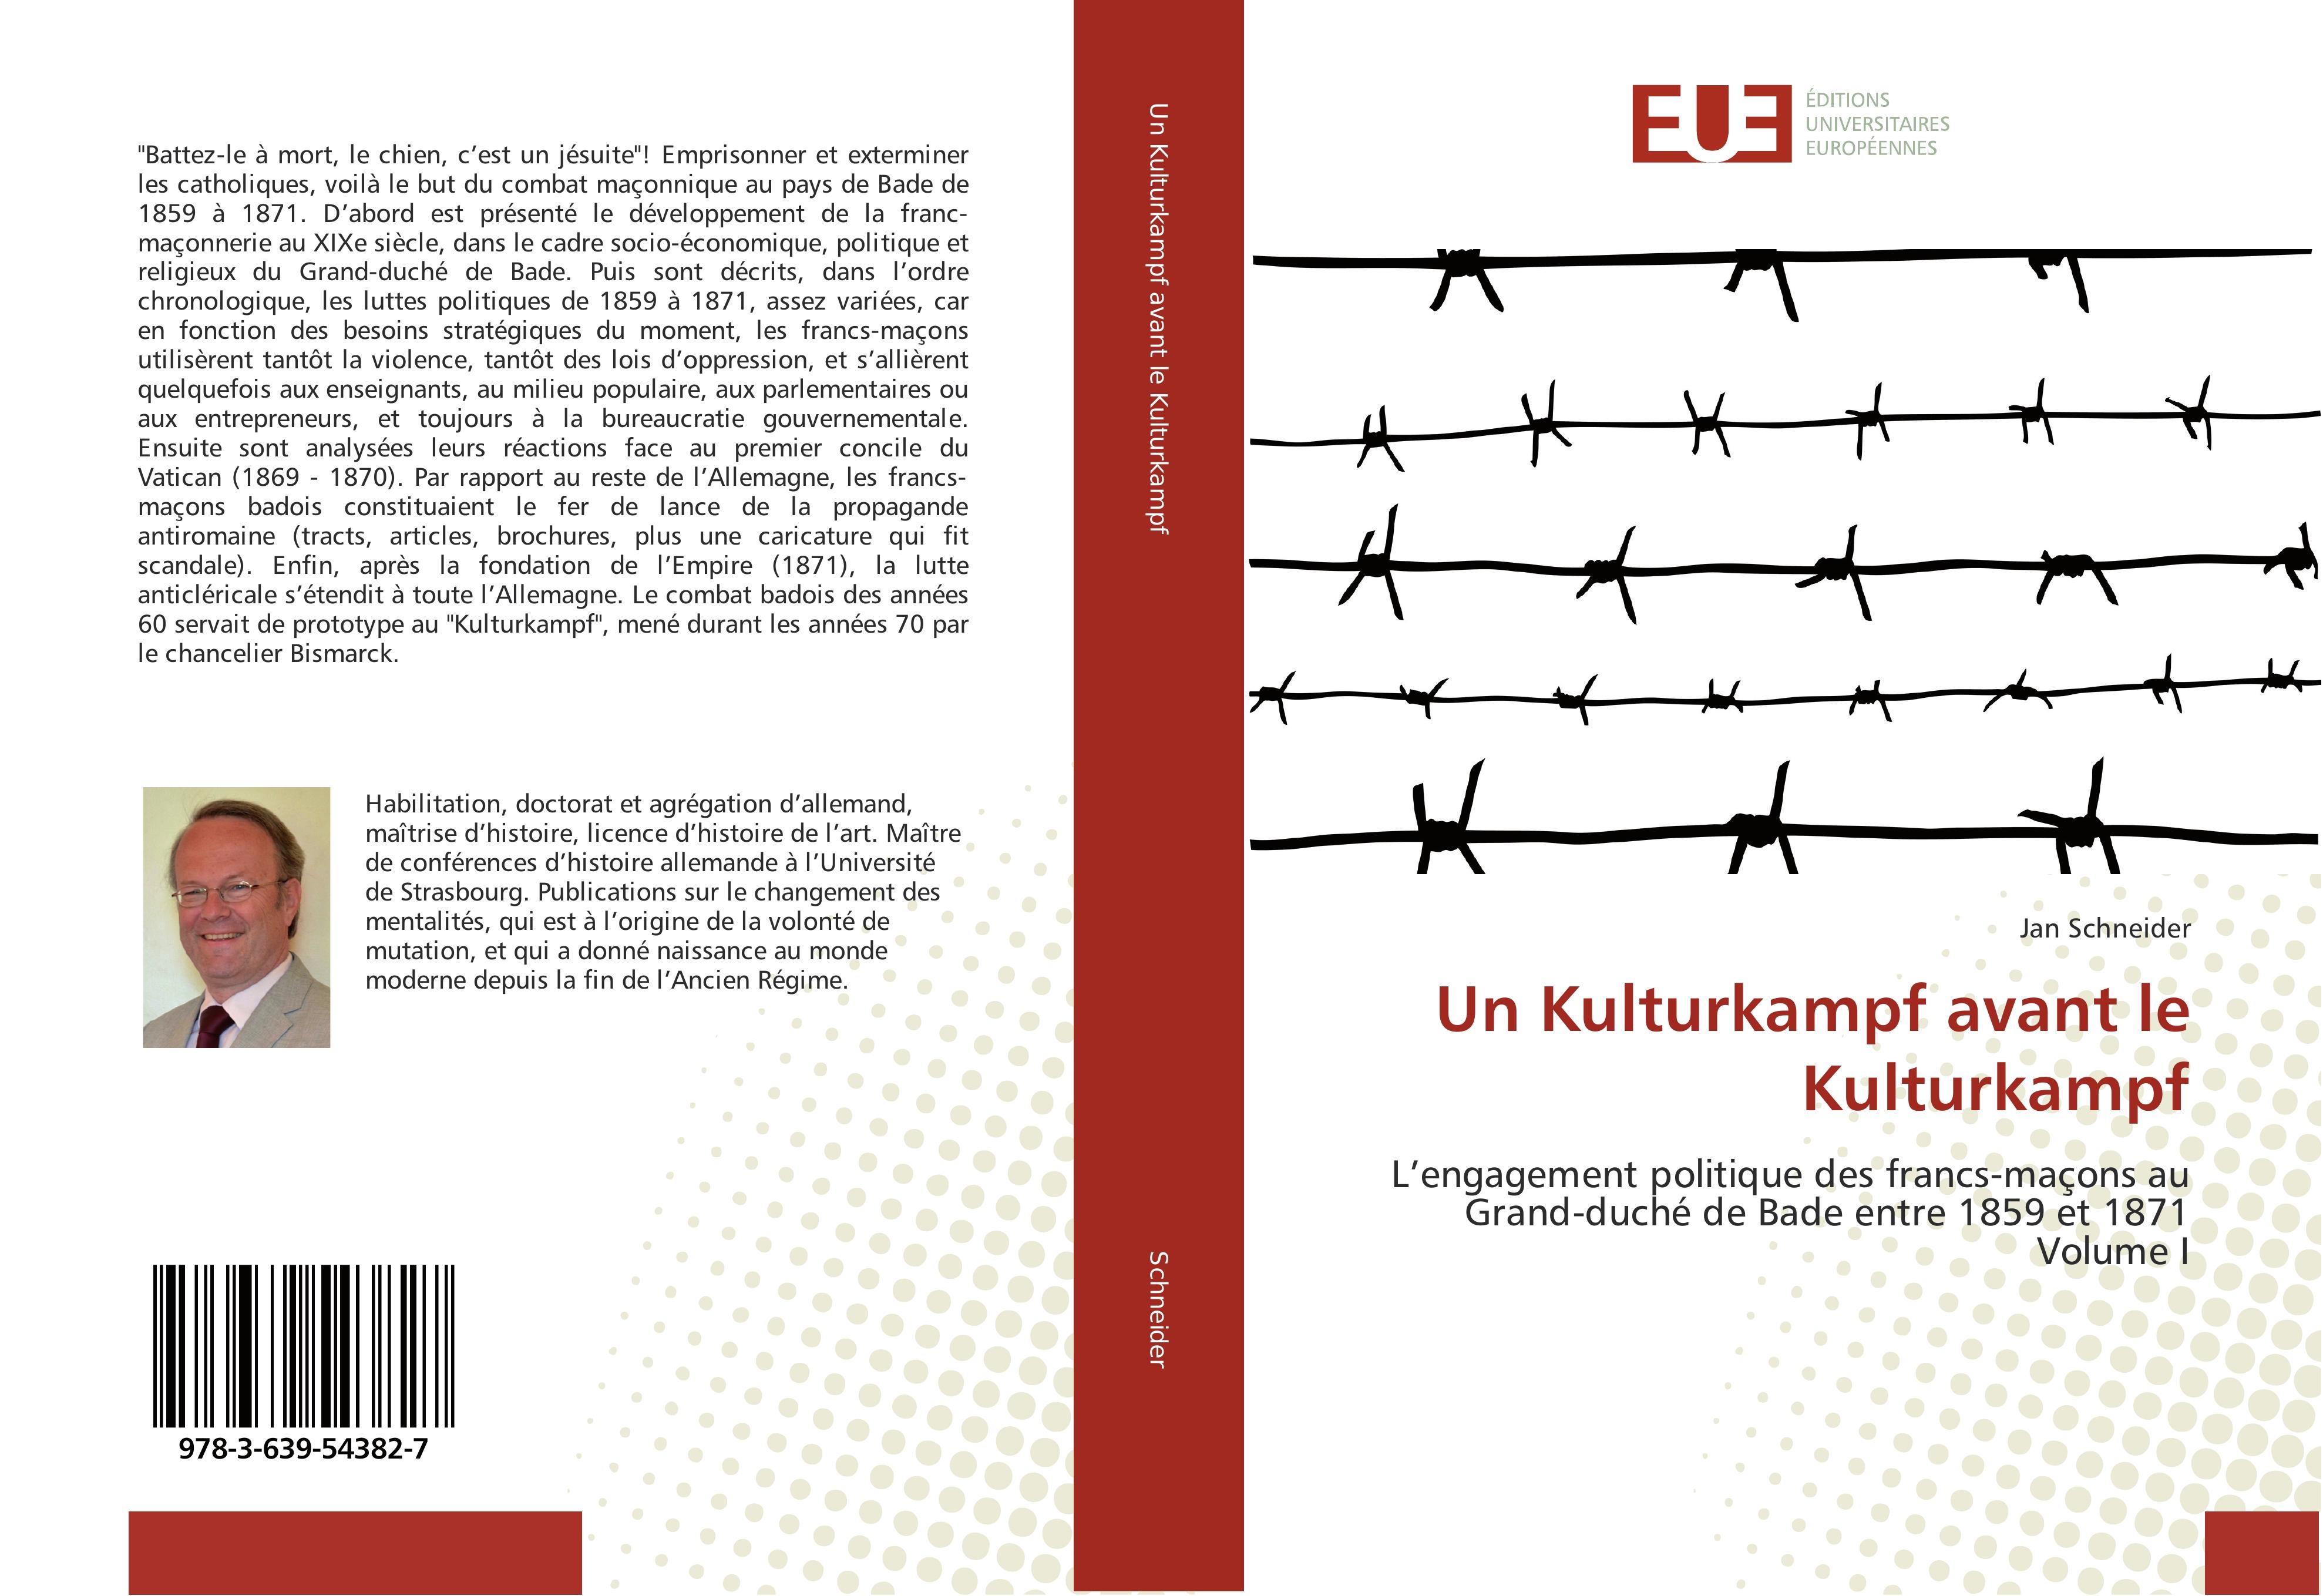 Un Kulturkampf avant le Kulturkampf - Jan Schneider